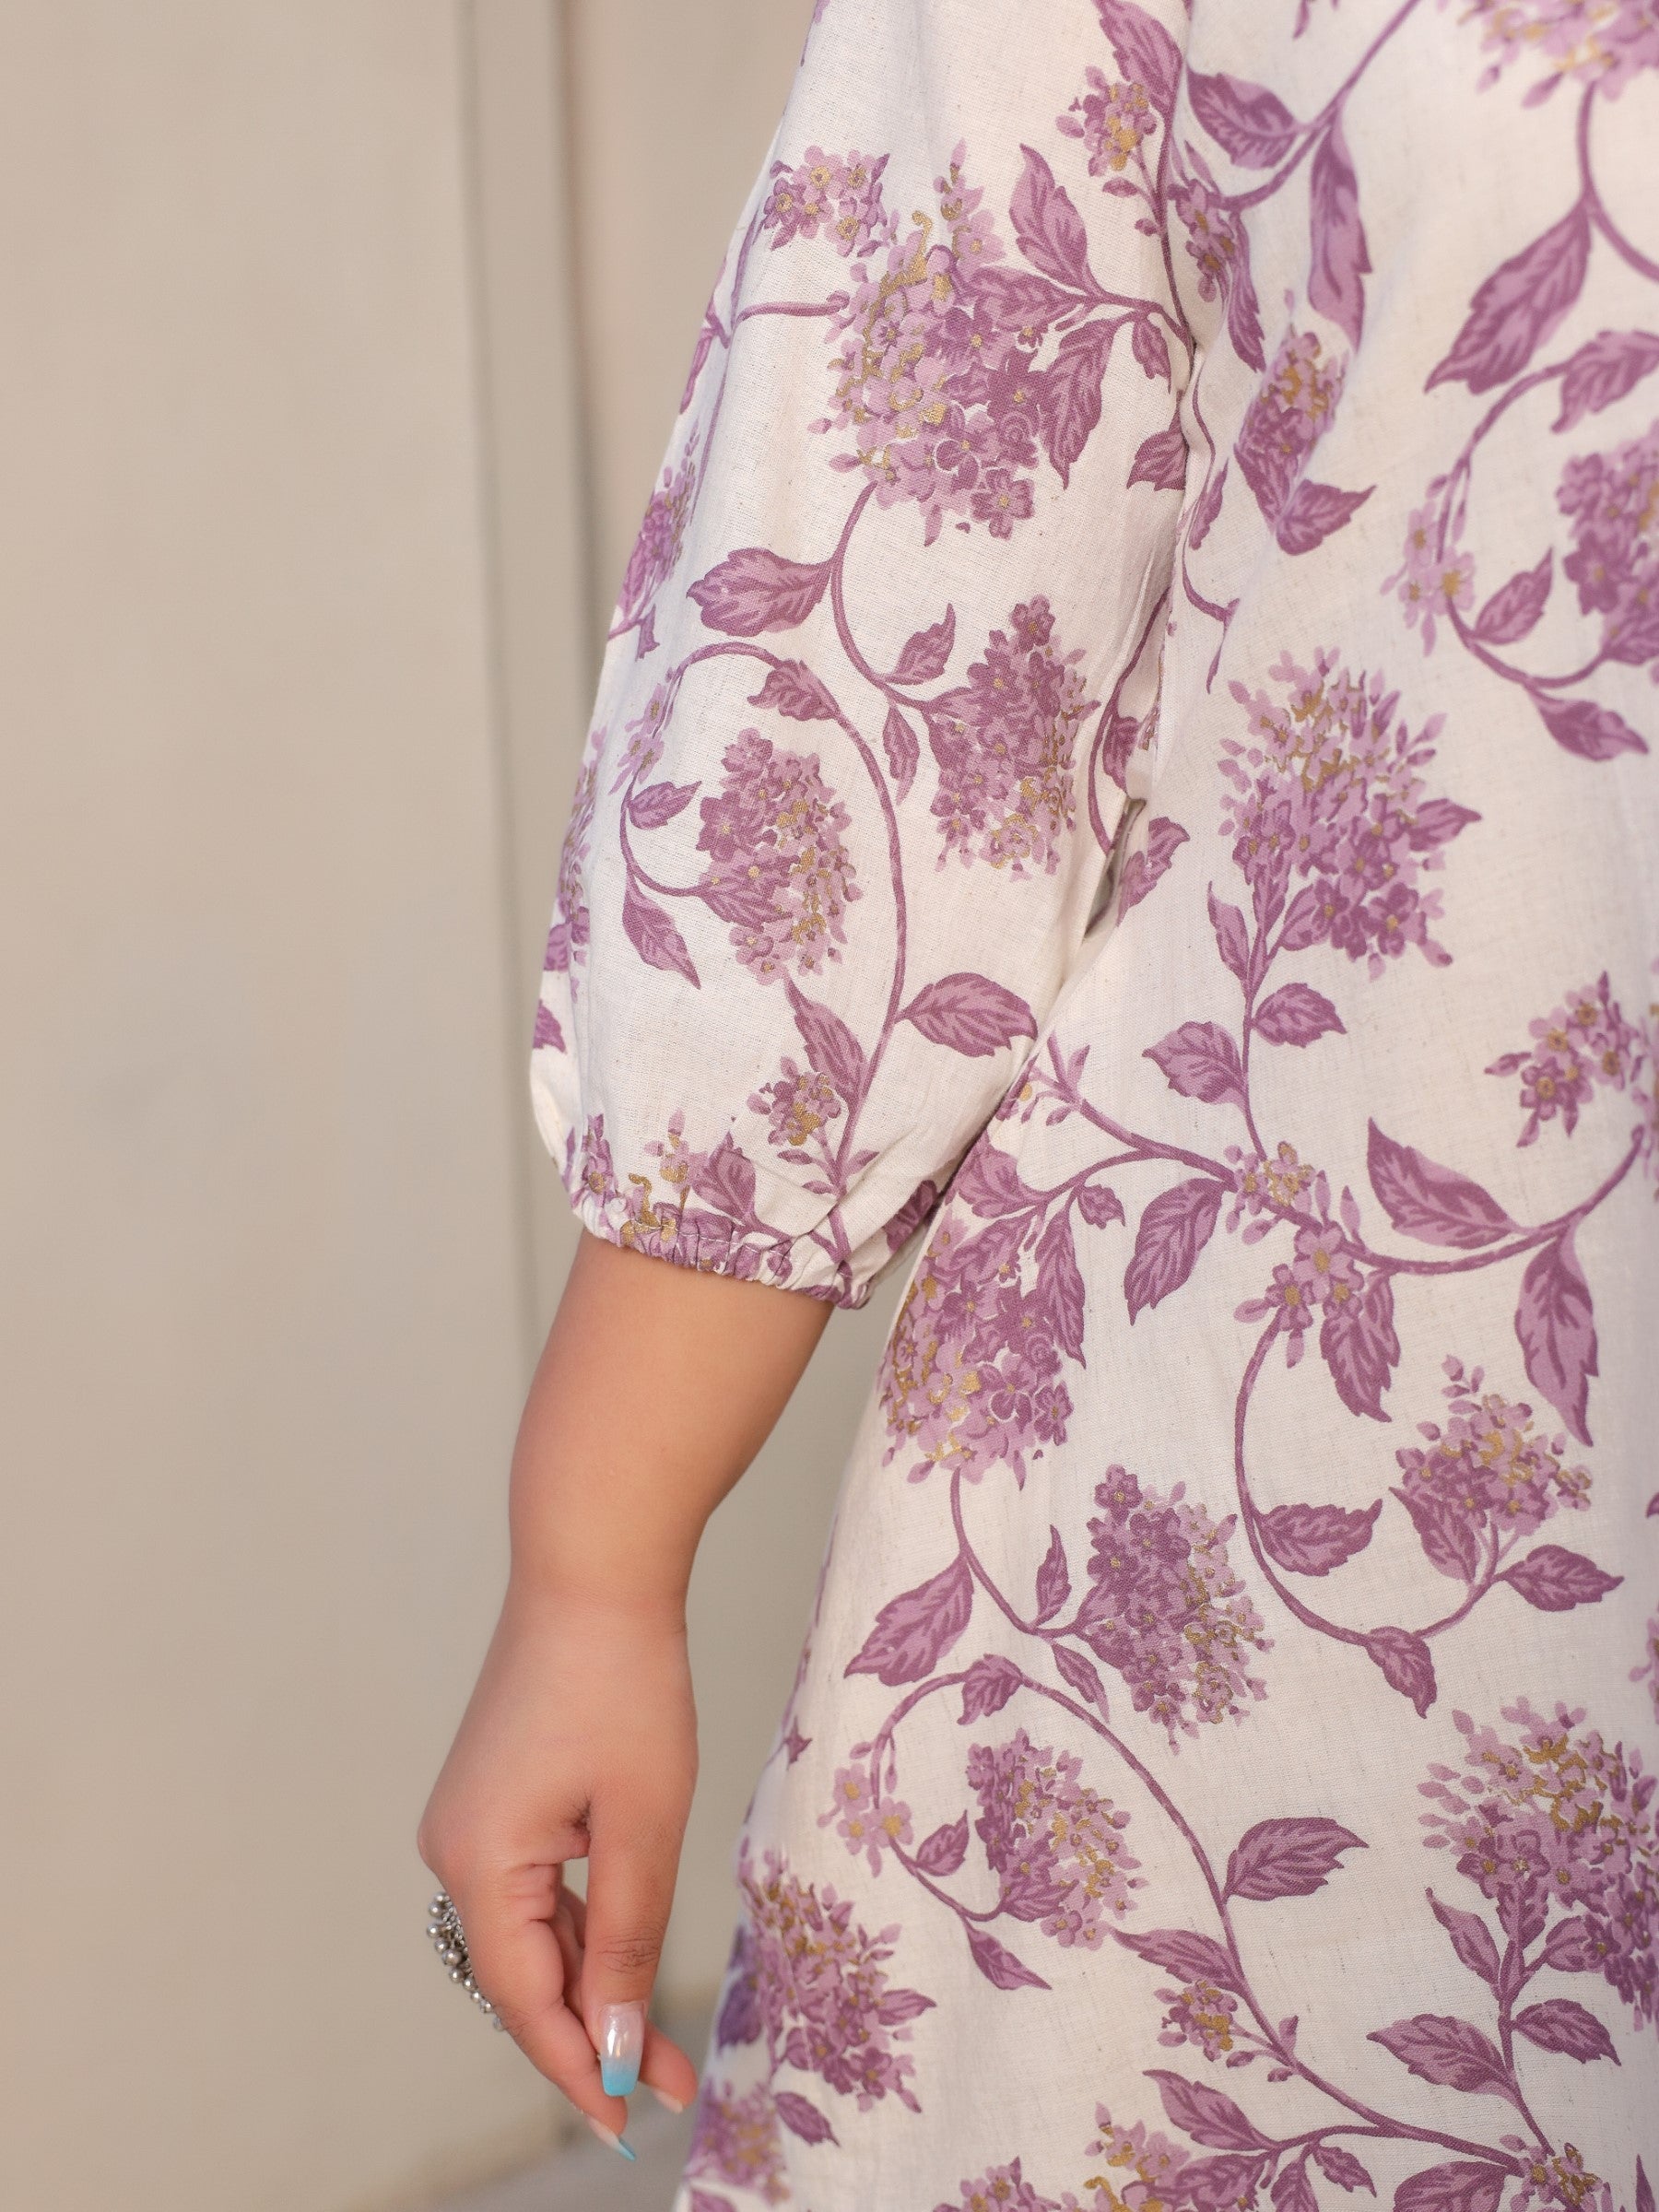 Lavender Floral Printed & Asymmetric Cotton Flex Plus Size Kurta With Beads & Sequins